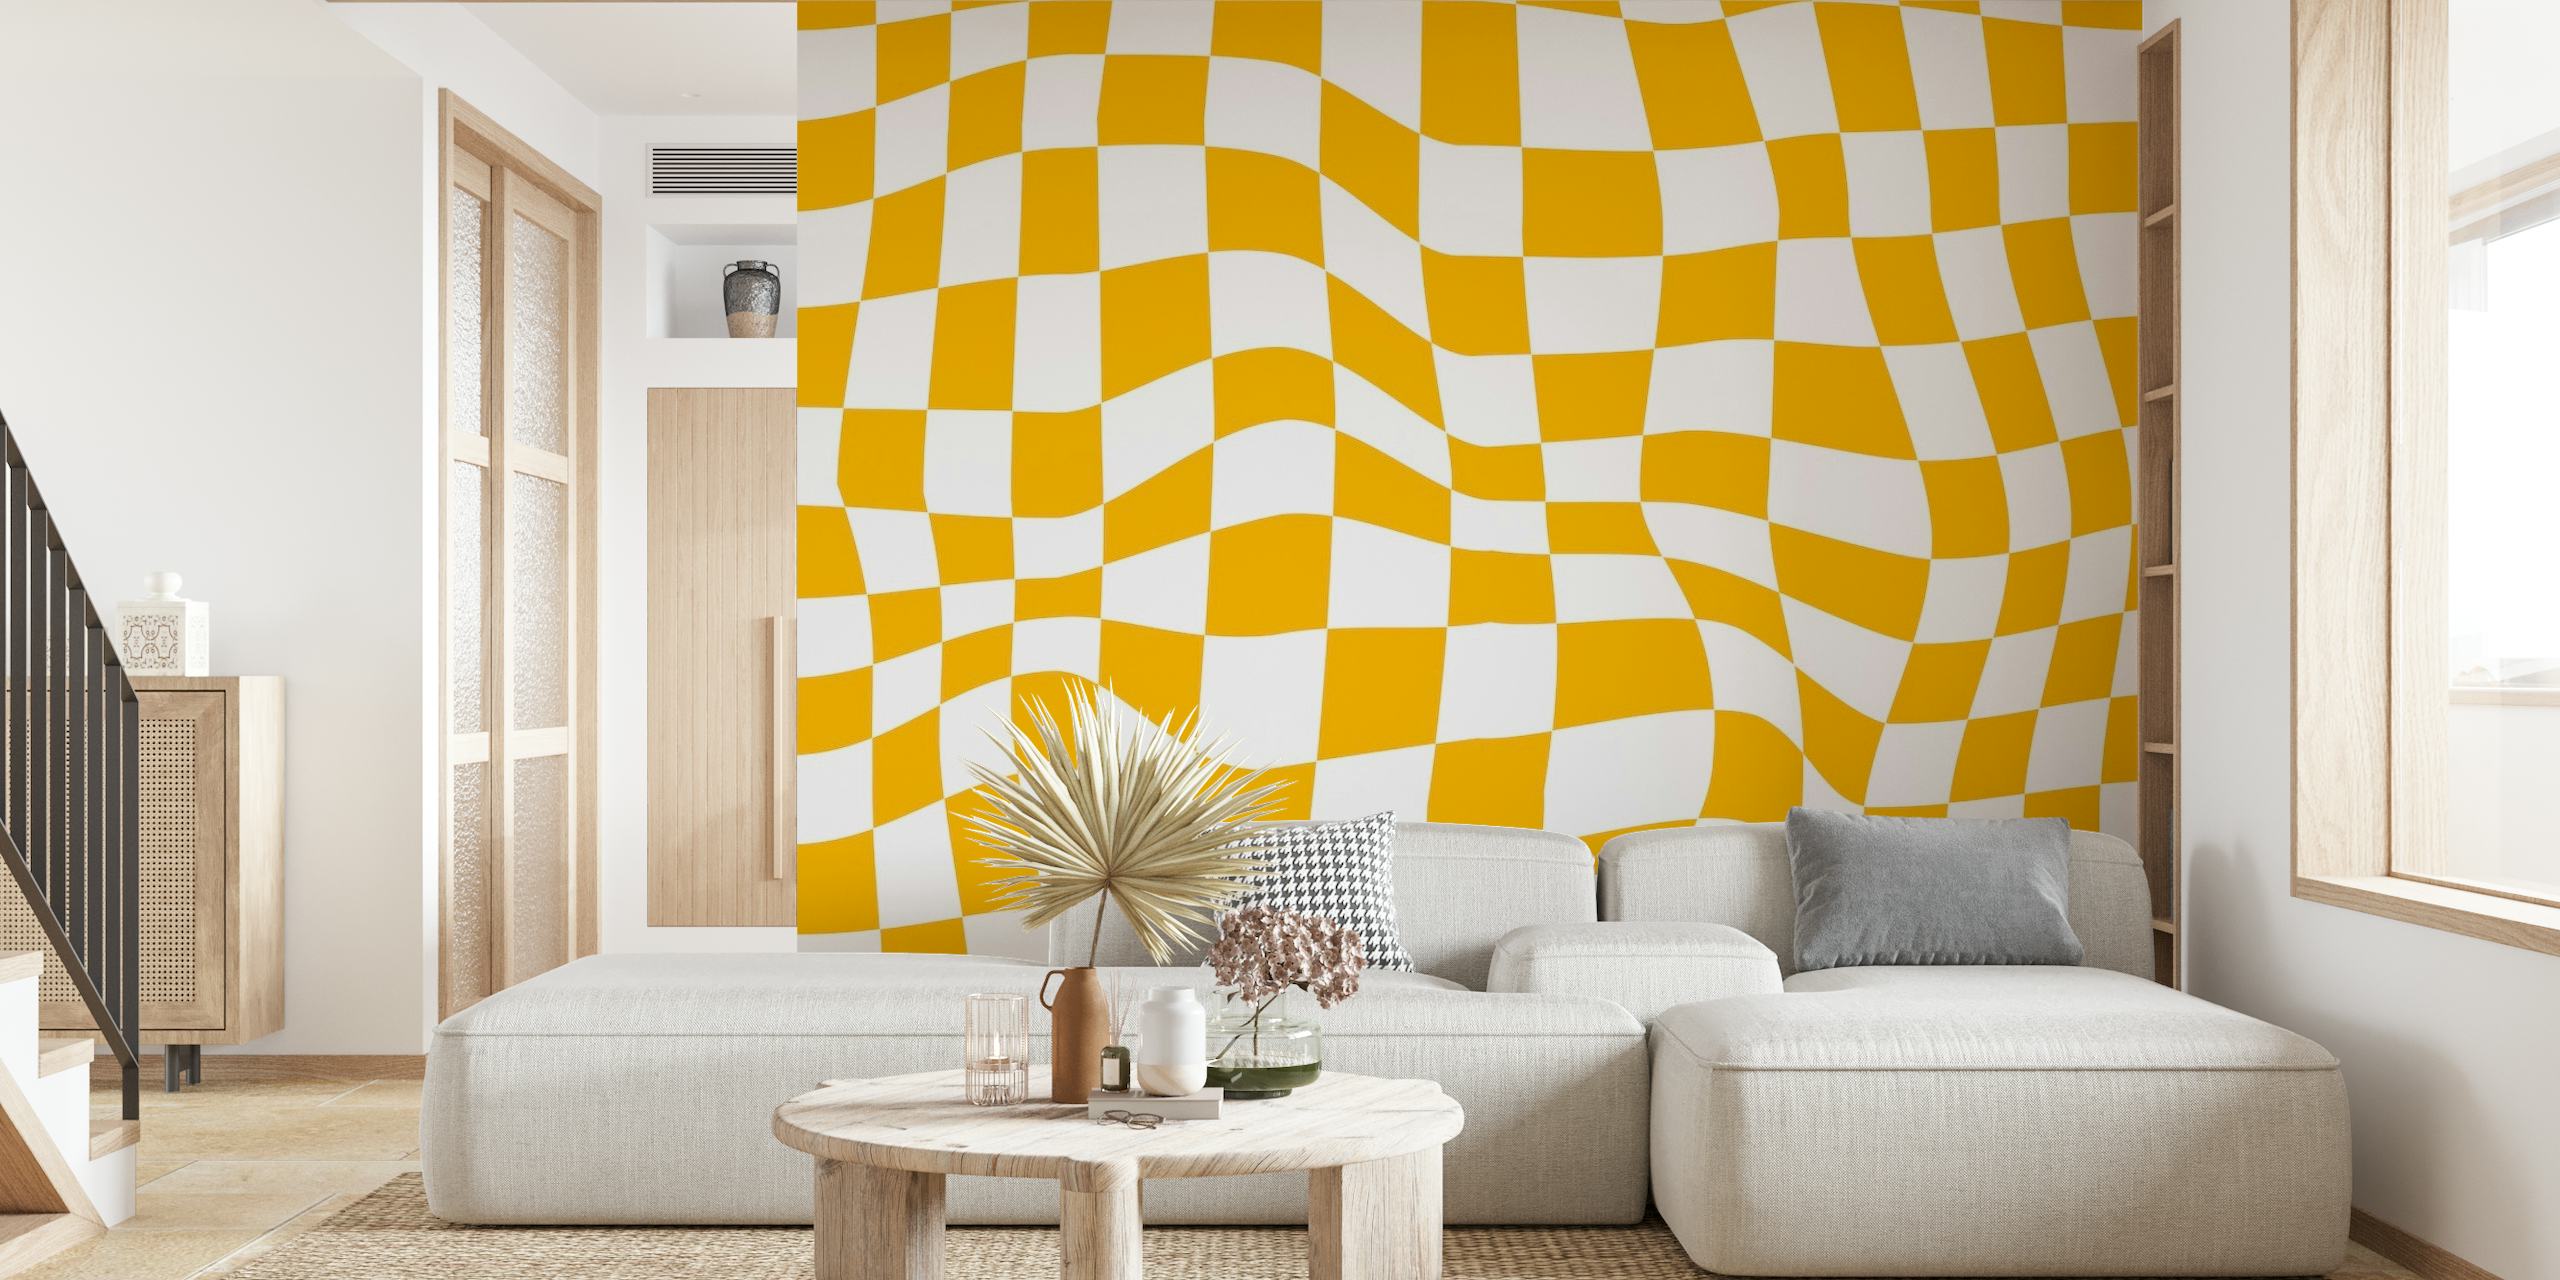 Mural de parede com padrão xadrez retrô amarelo e branco evocando vibrações do estilo dos anos 60 e 70